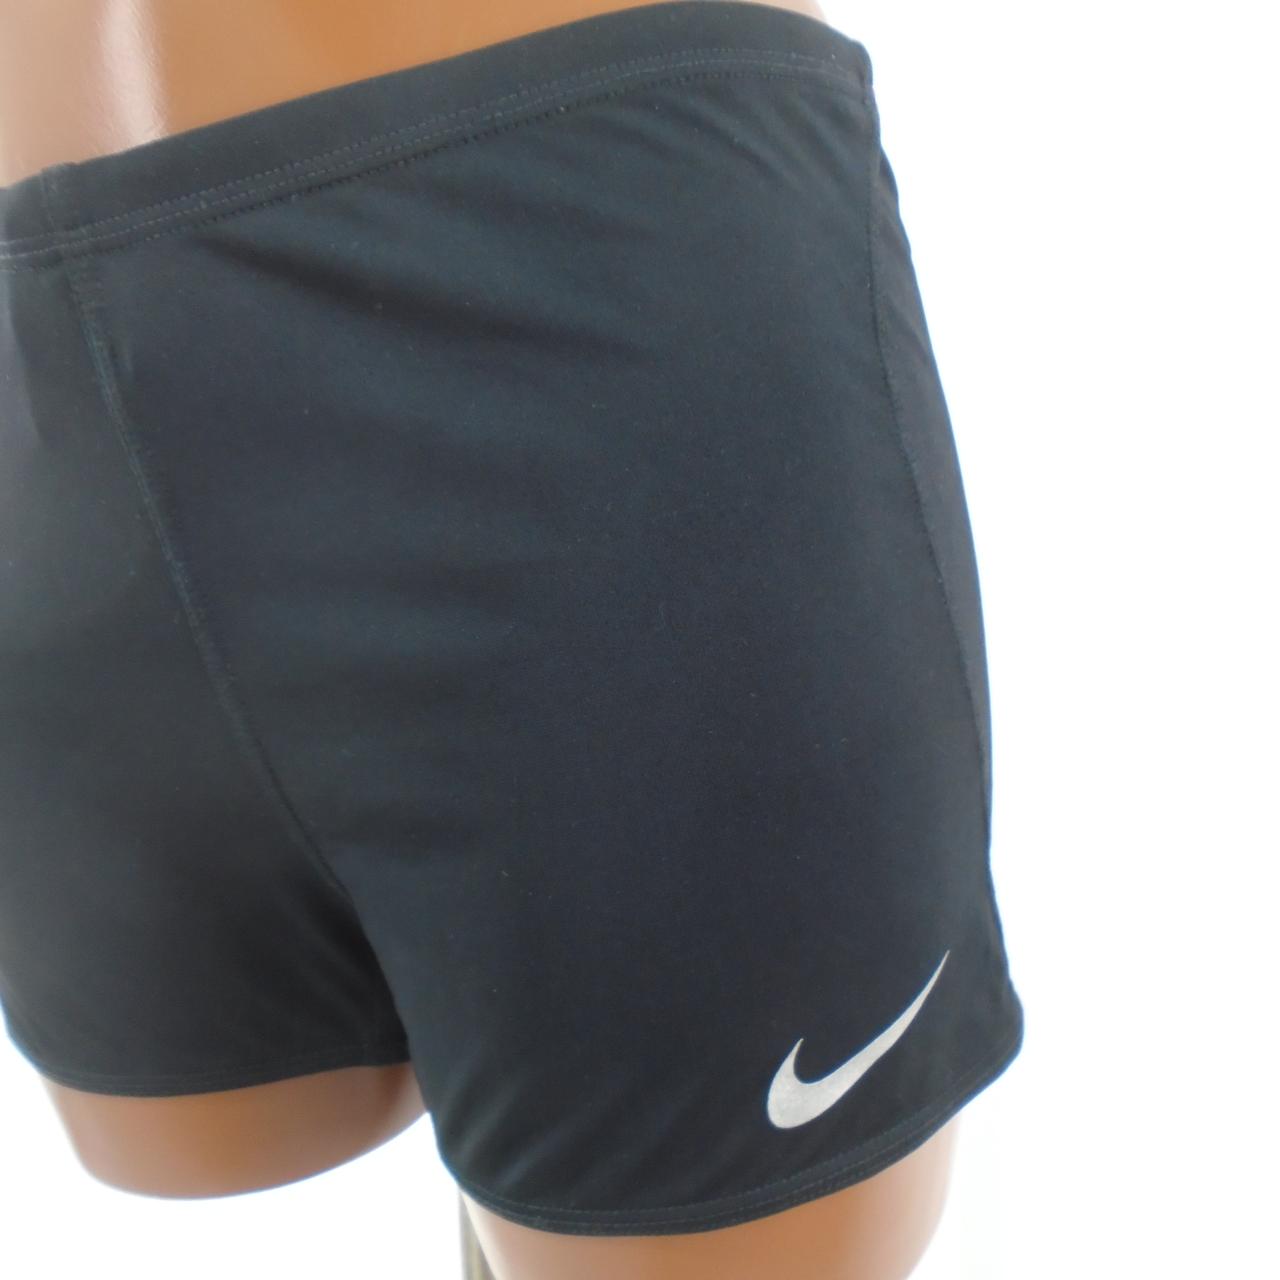 Women's Shorts Nike. Black. L. Used. Good